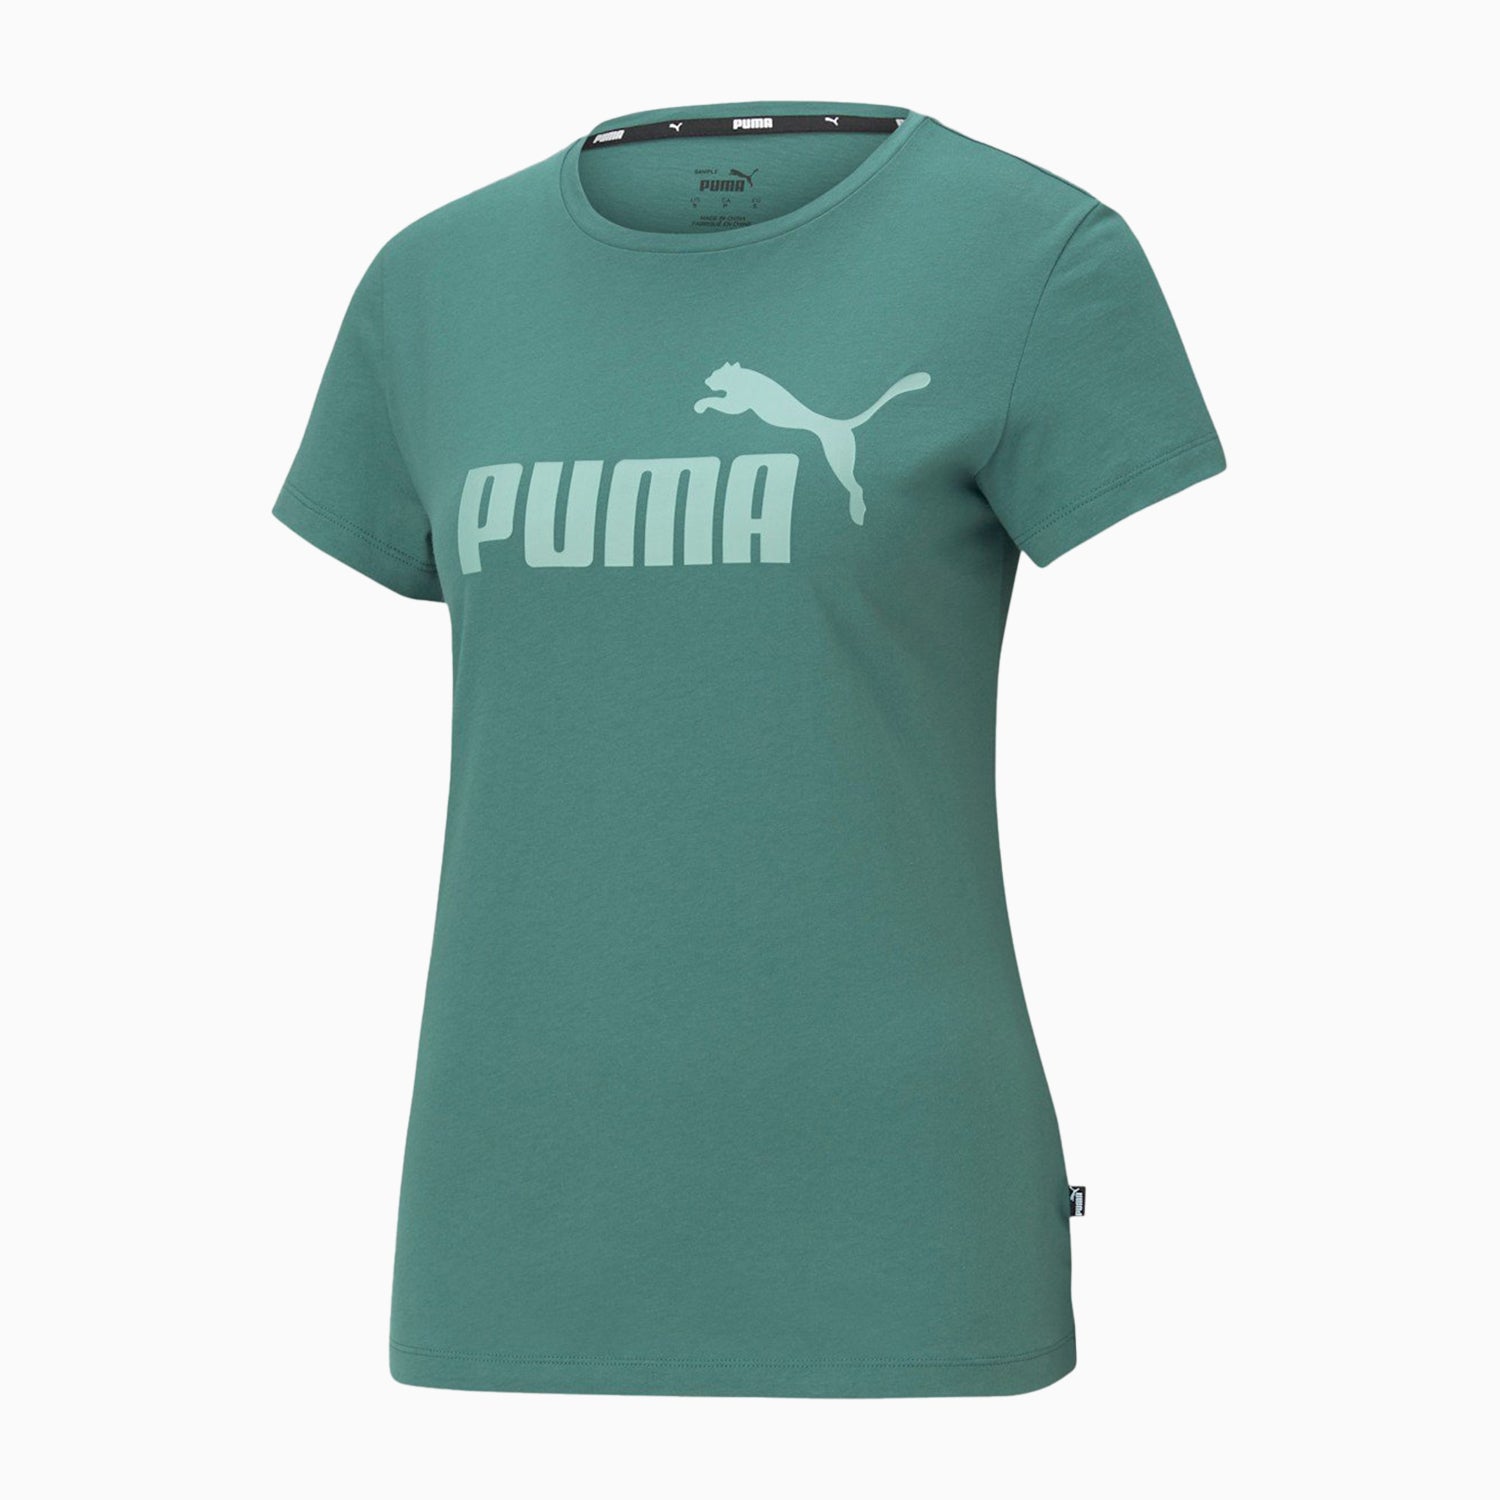 puma-womens-essentials-logo-outfit-589317-22-589325-22